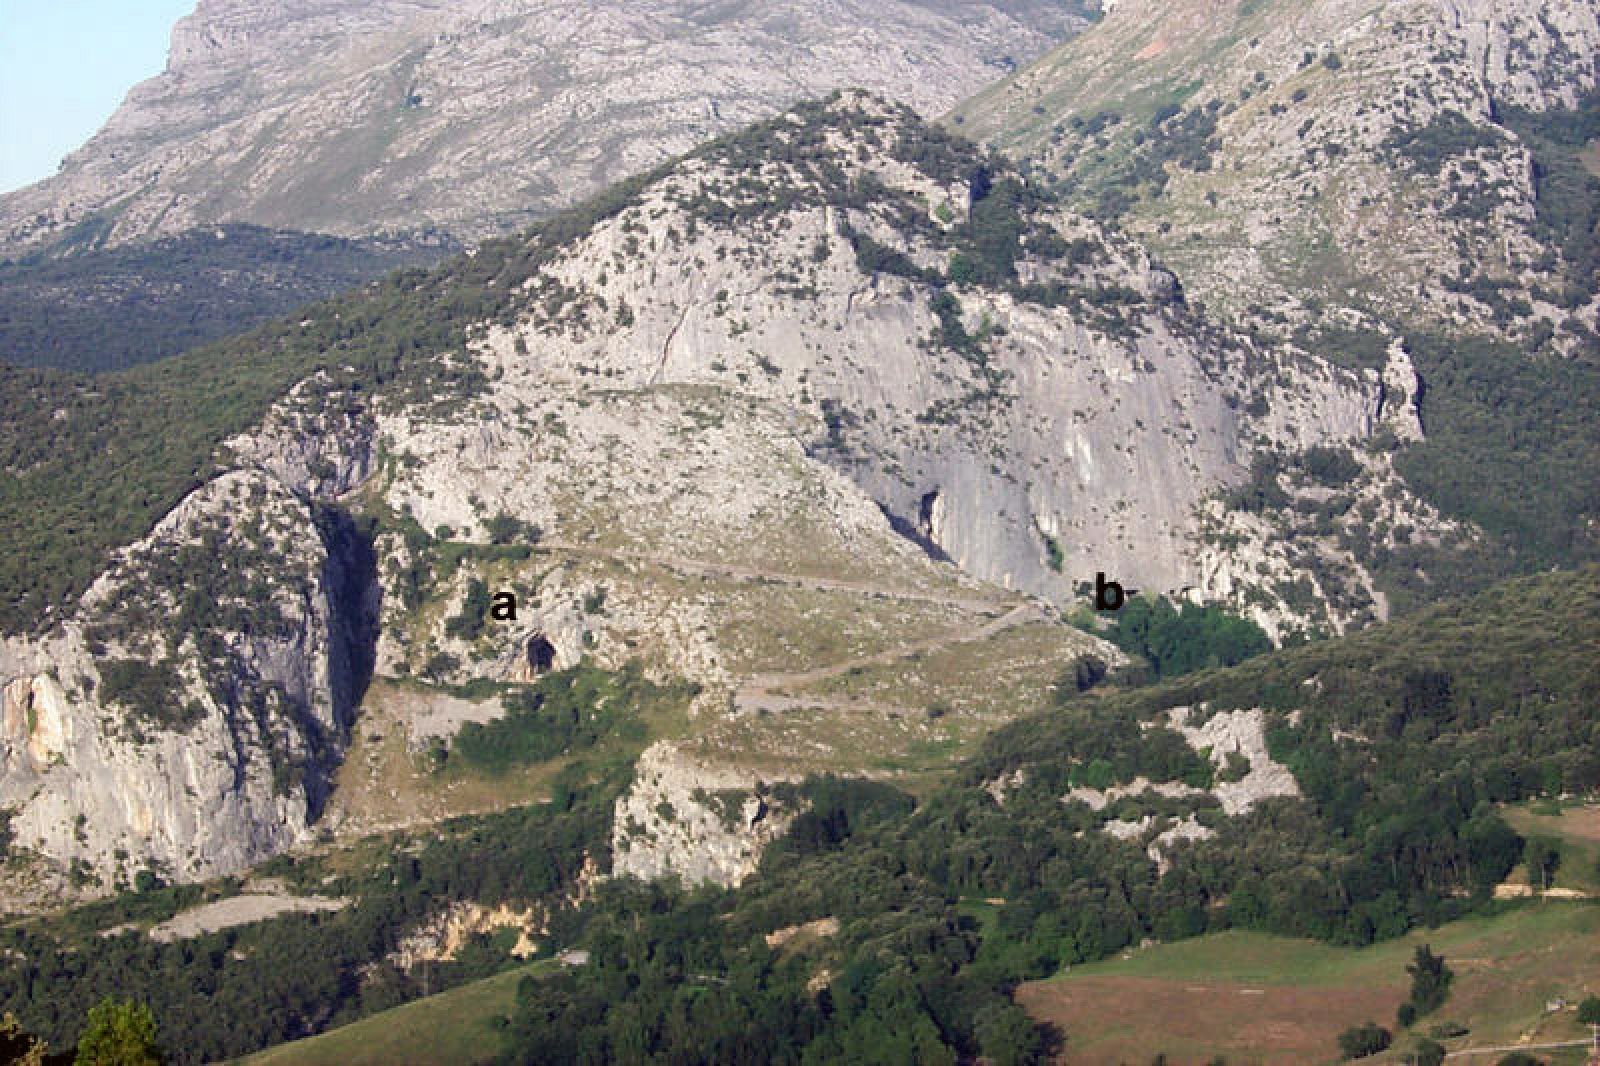 Vista del Monte Castillo, donde se encuentra la Cueva de El Castillo.